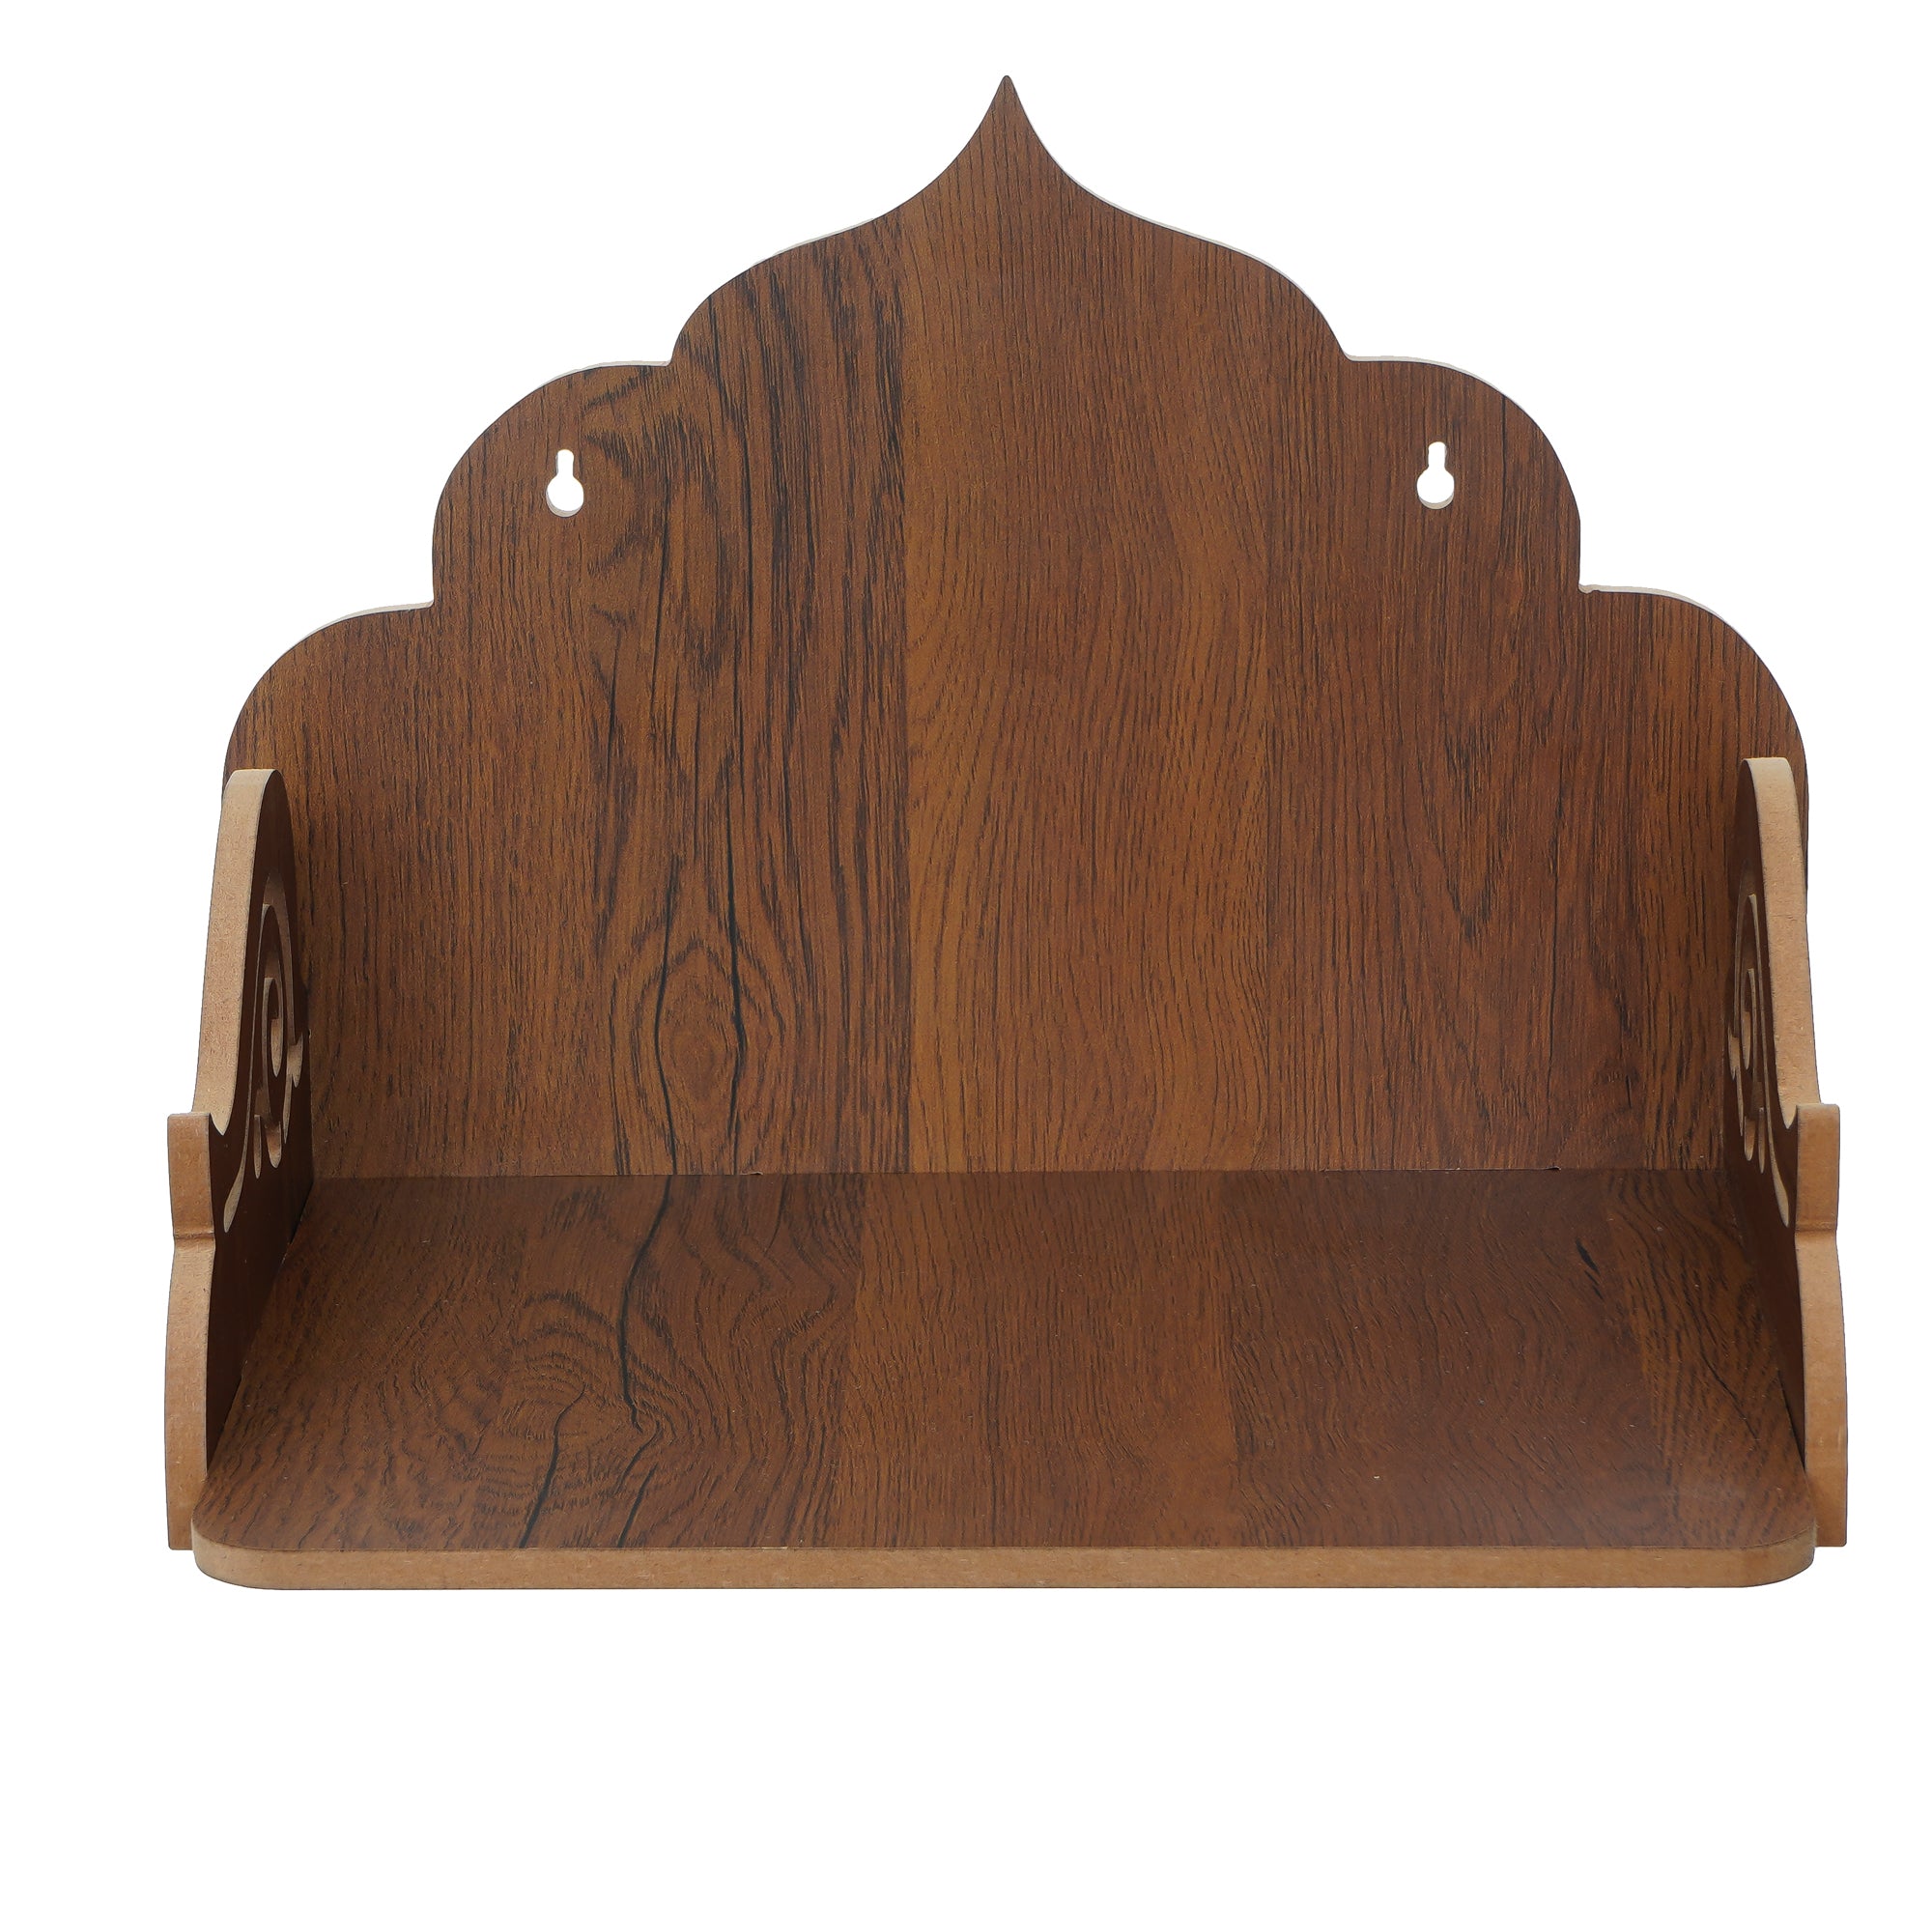 Designer Laminated Wood Pooja Temple/Mandir 5